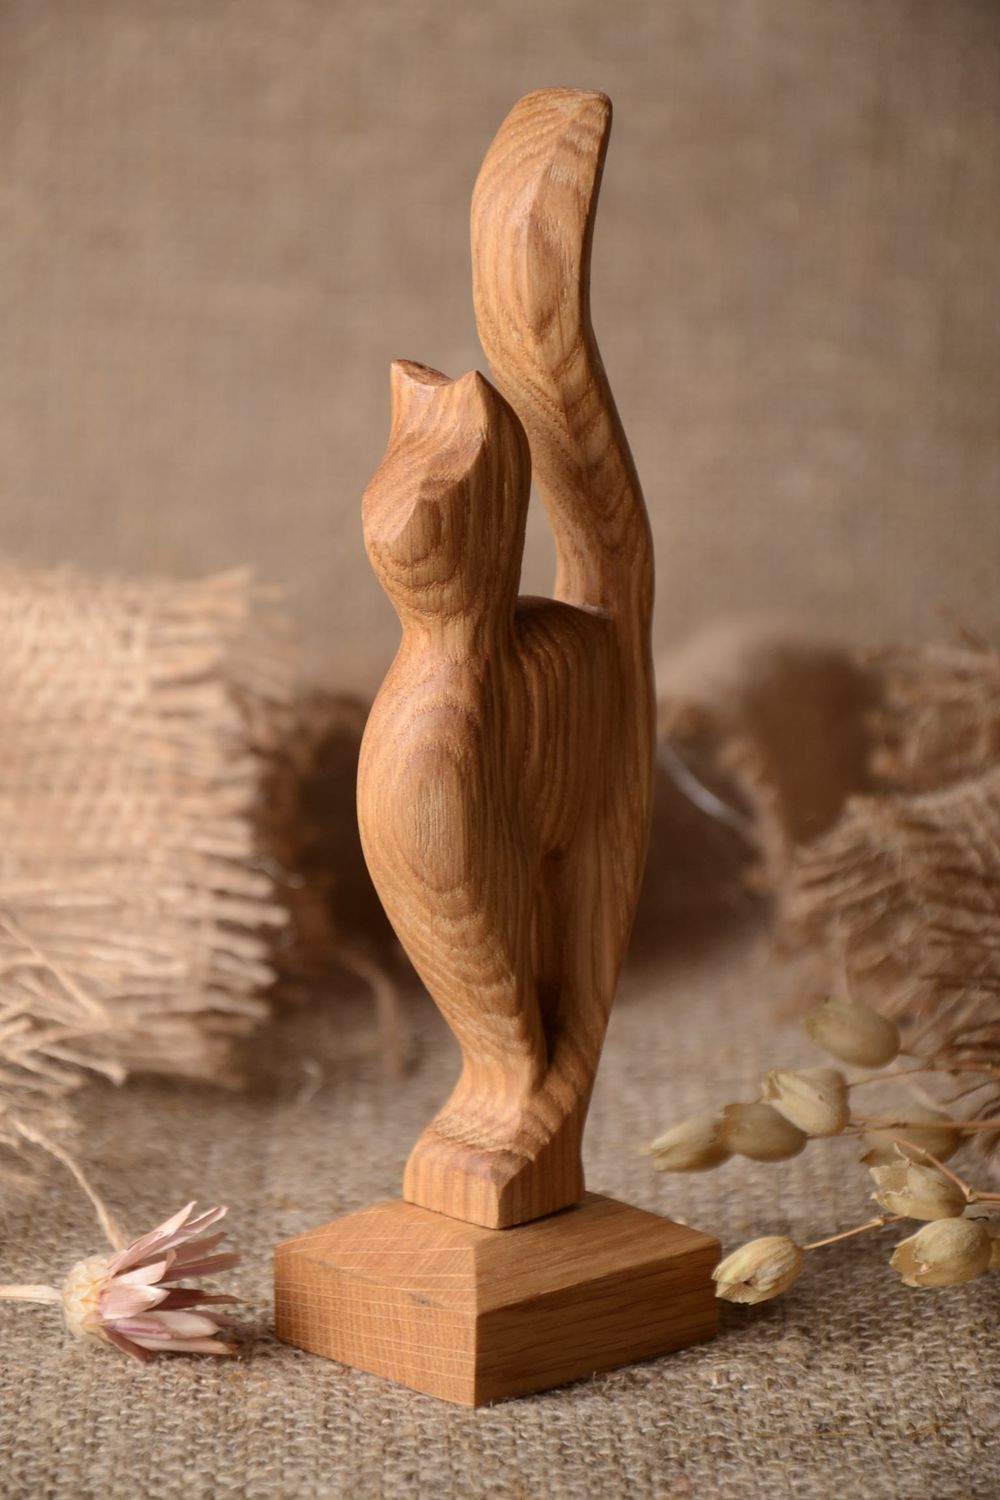 Статуэтка из дерева хэнд мэйд фигура из дерева красивый сувенир из дерева Кот  фото 1